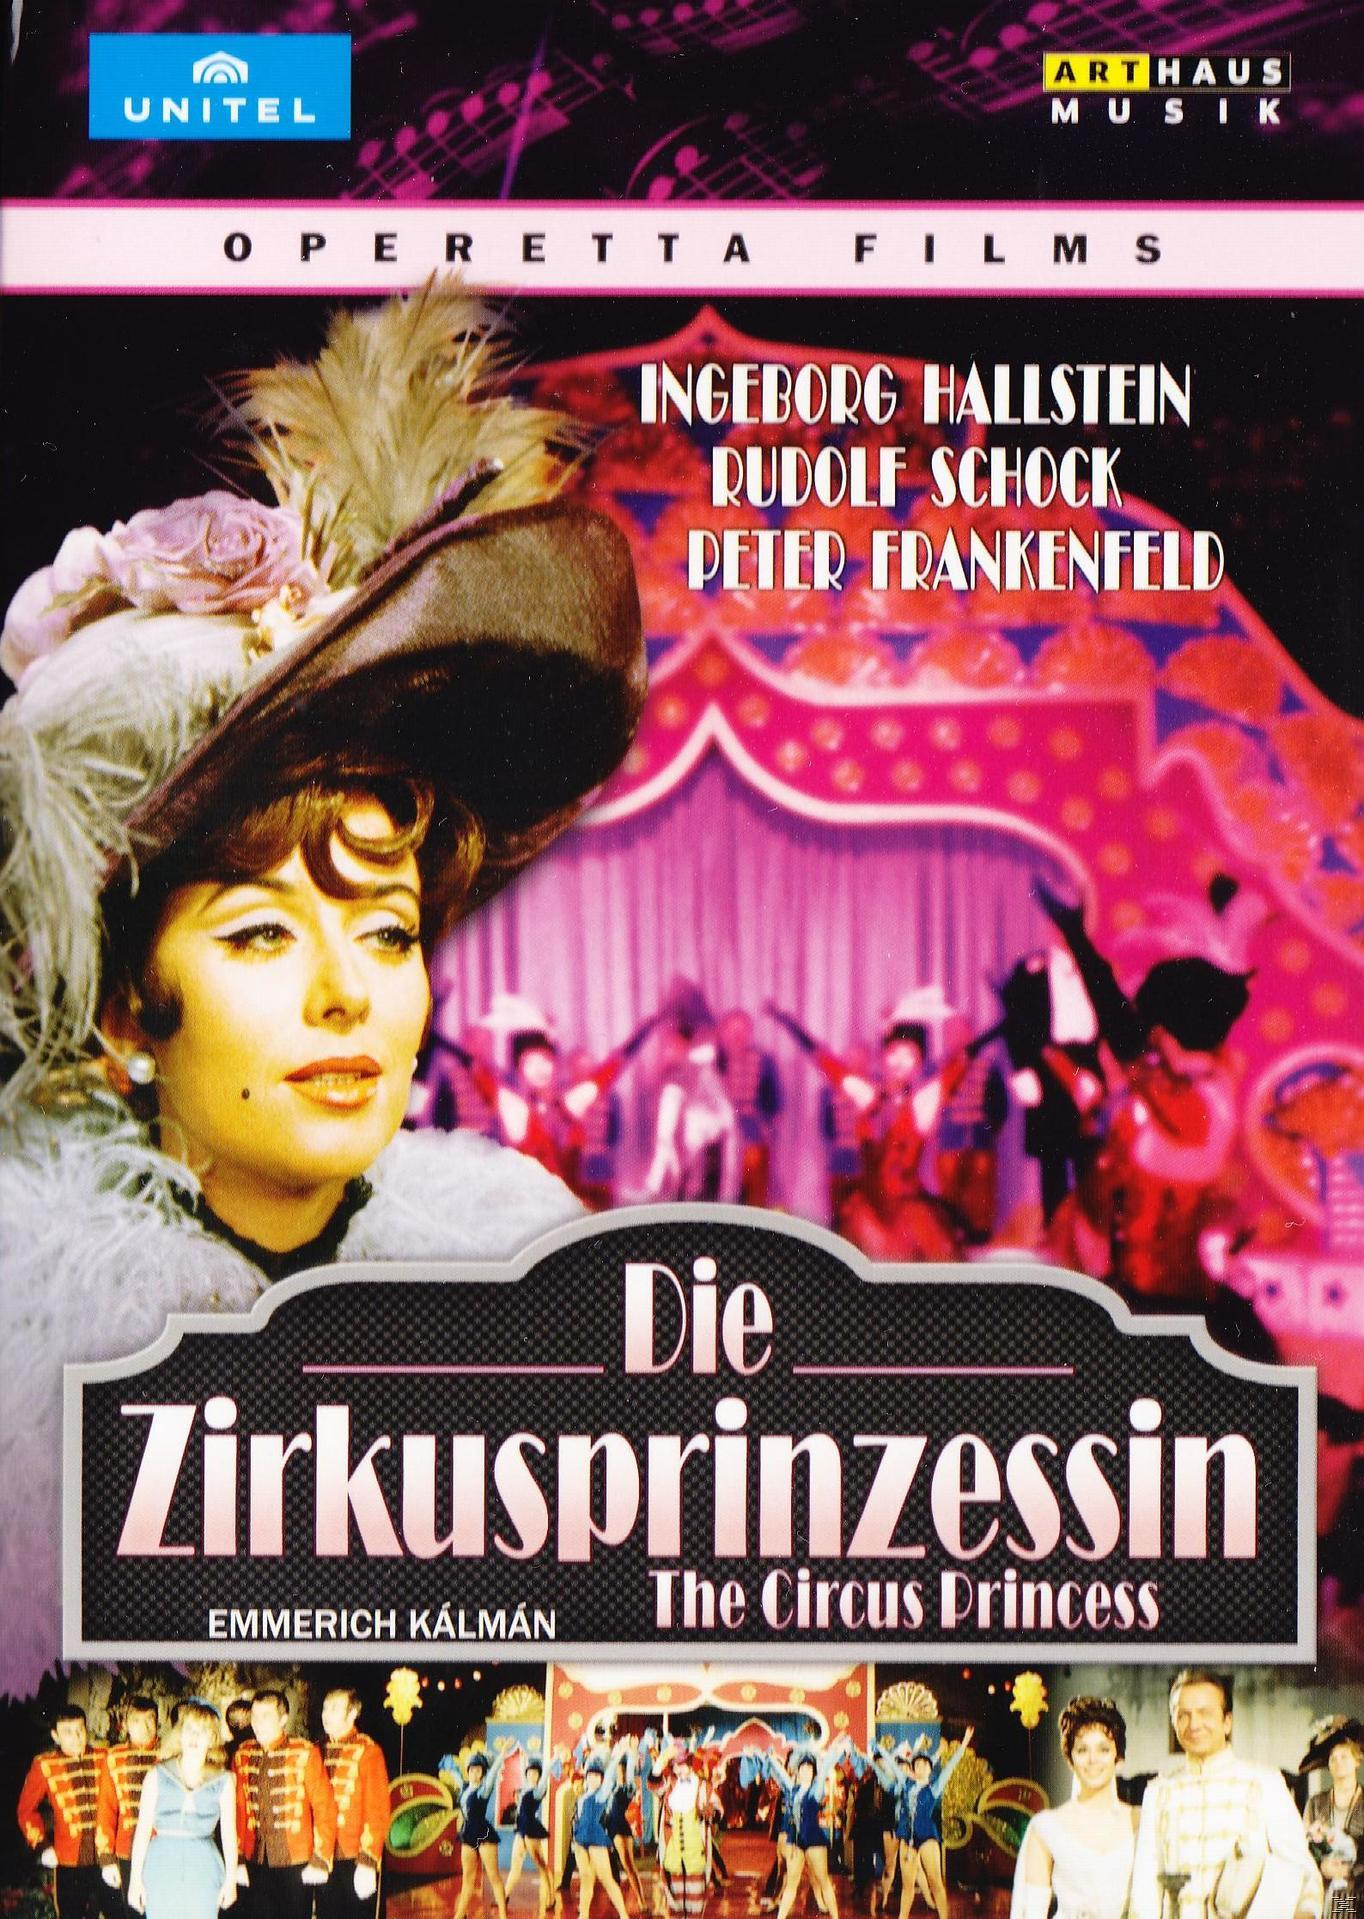 Ingeborg Hallenstein, Rudolf (DVD) - - Die Schock Zirkusprinzessin